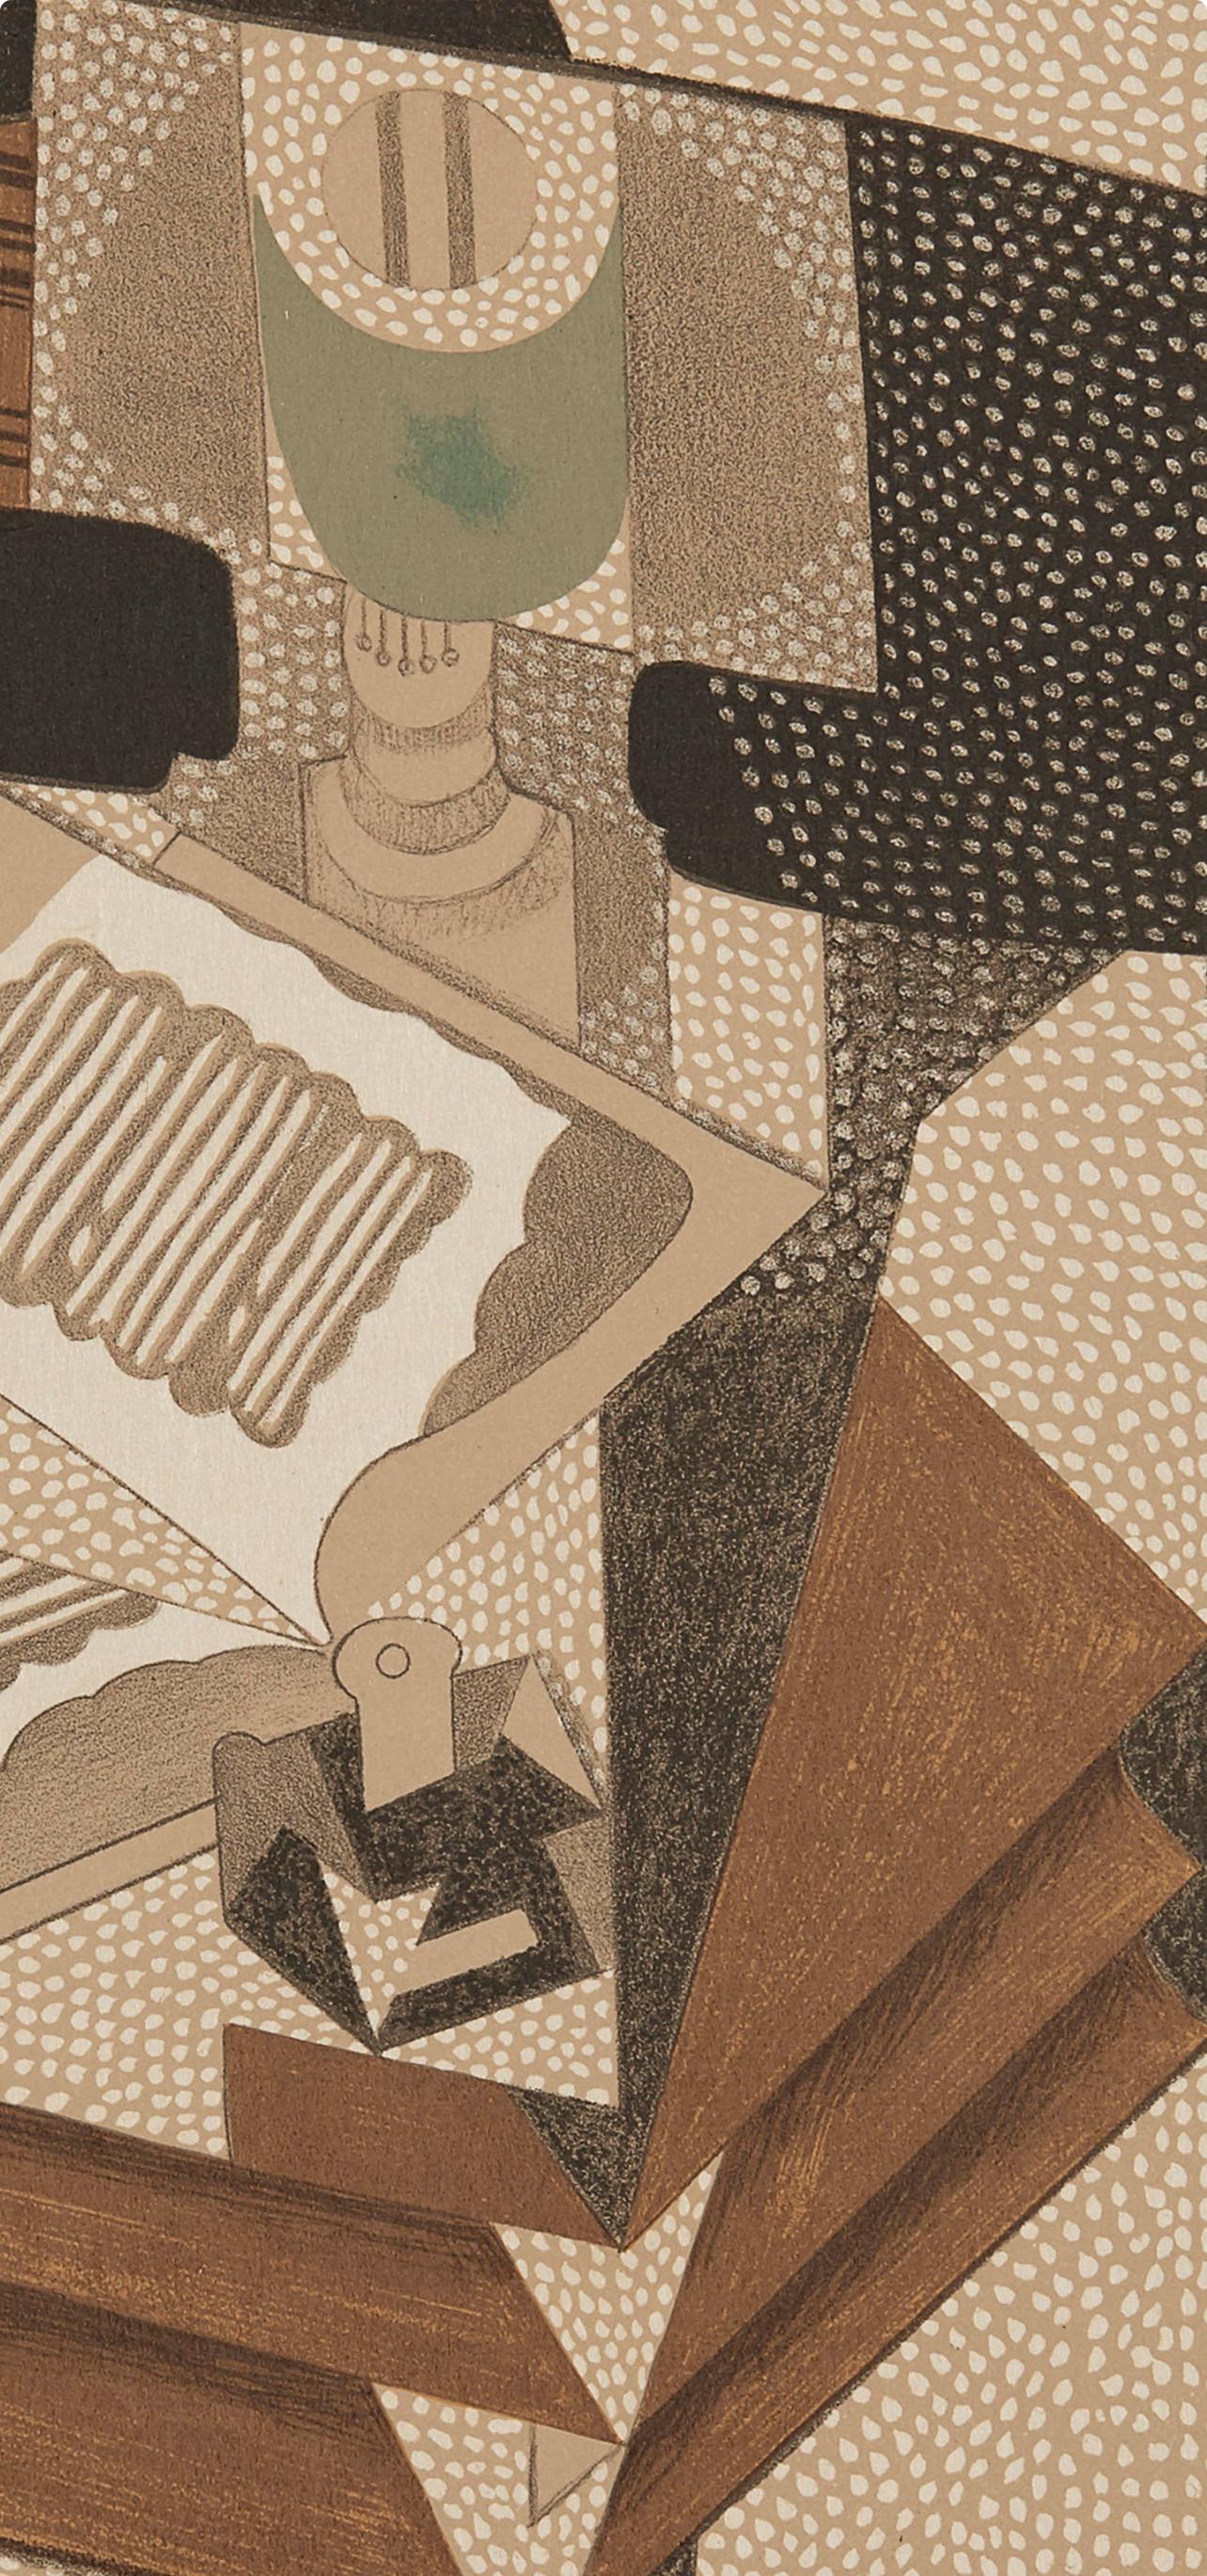 Gris, Le Livre (Kahnweiler 1969), Au Soleil du Plafond (after) - Print by Juan Gris